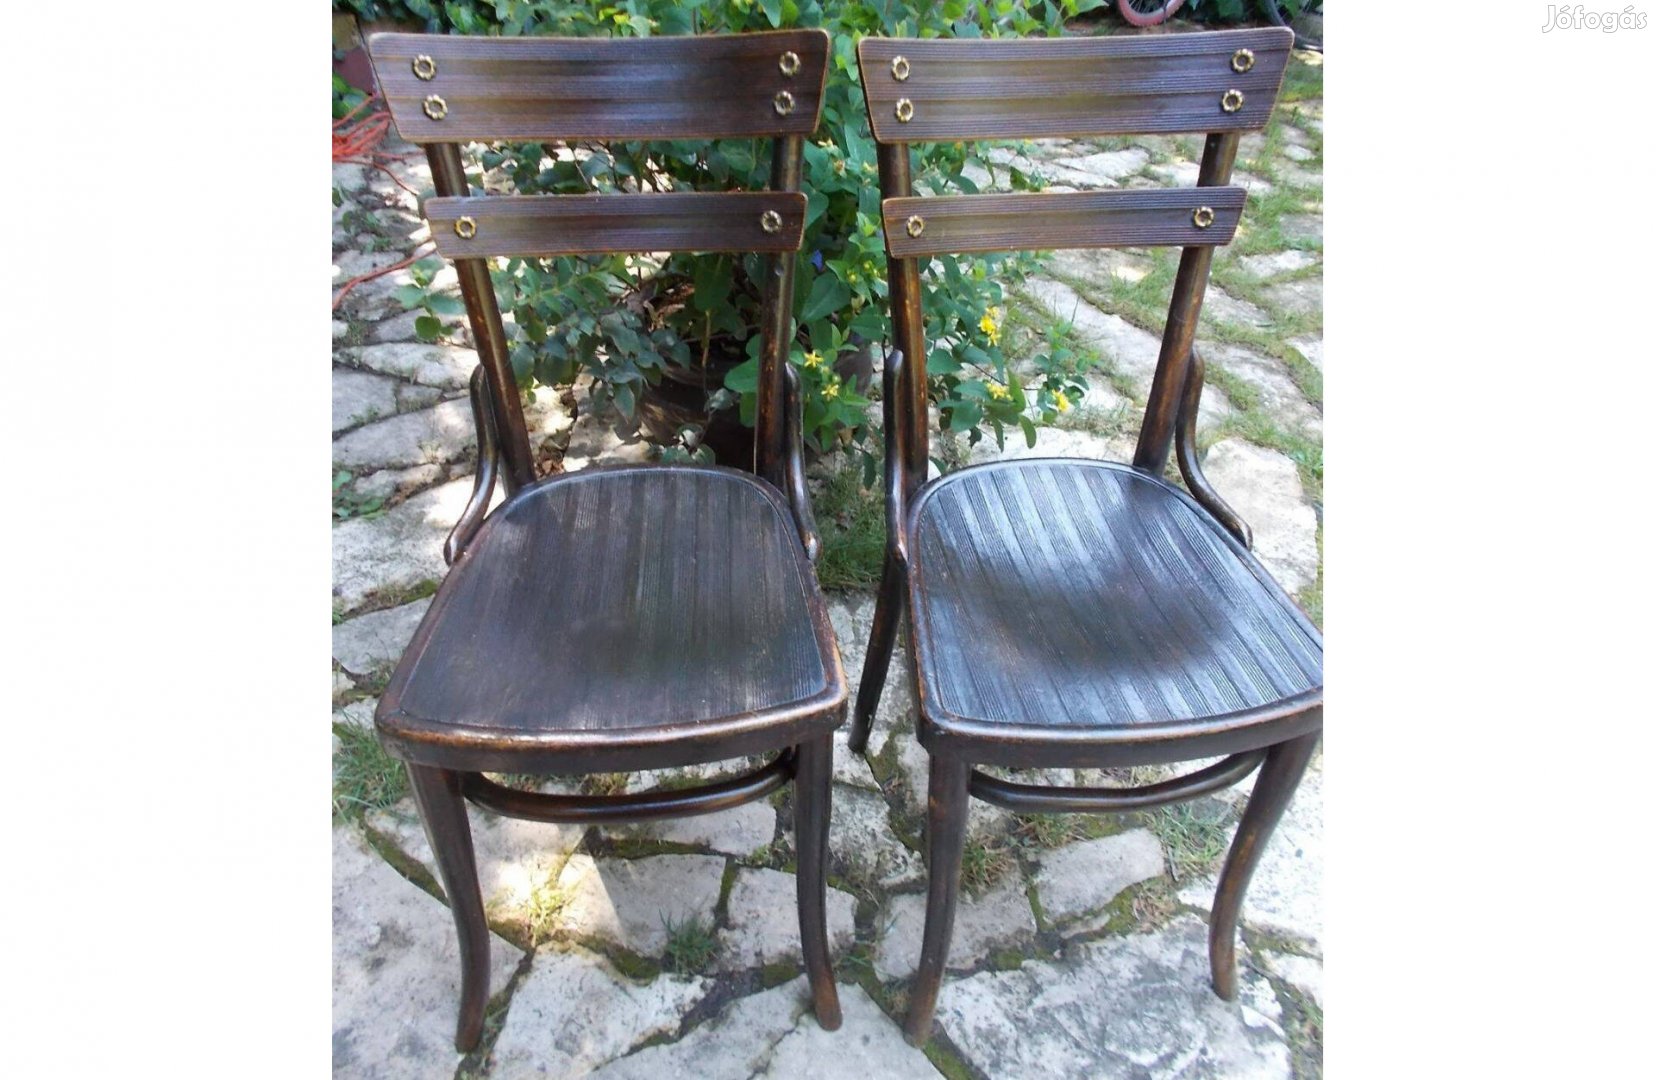 Thonet Style Chairs Bentwood székek párban, gyűjtőknek